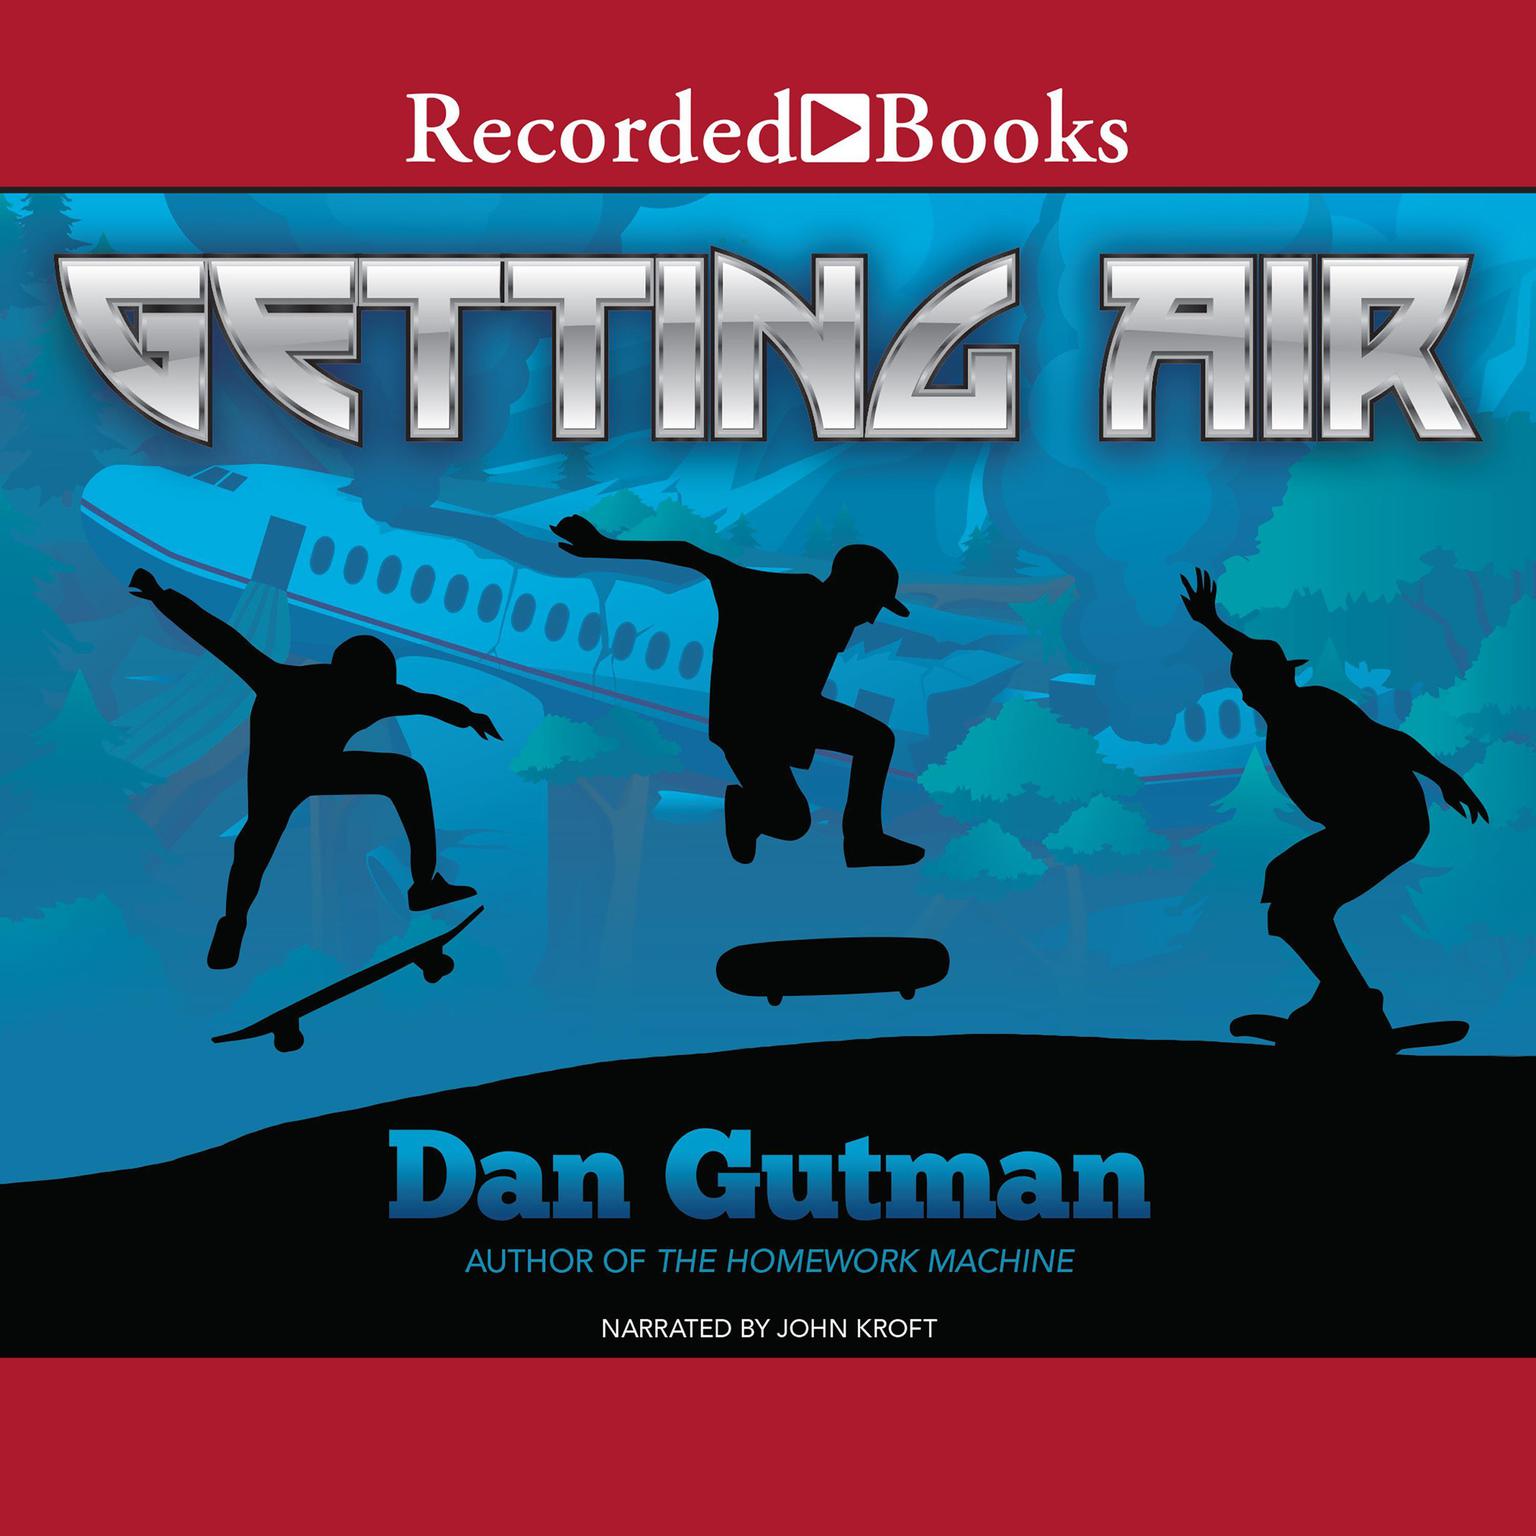 Getting Air Audiobook, by Dan Gutman